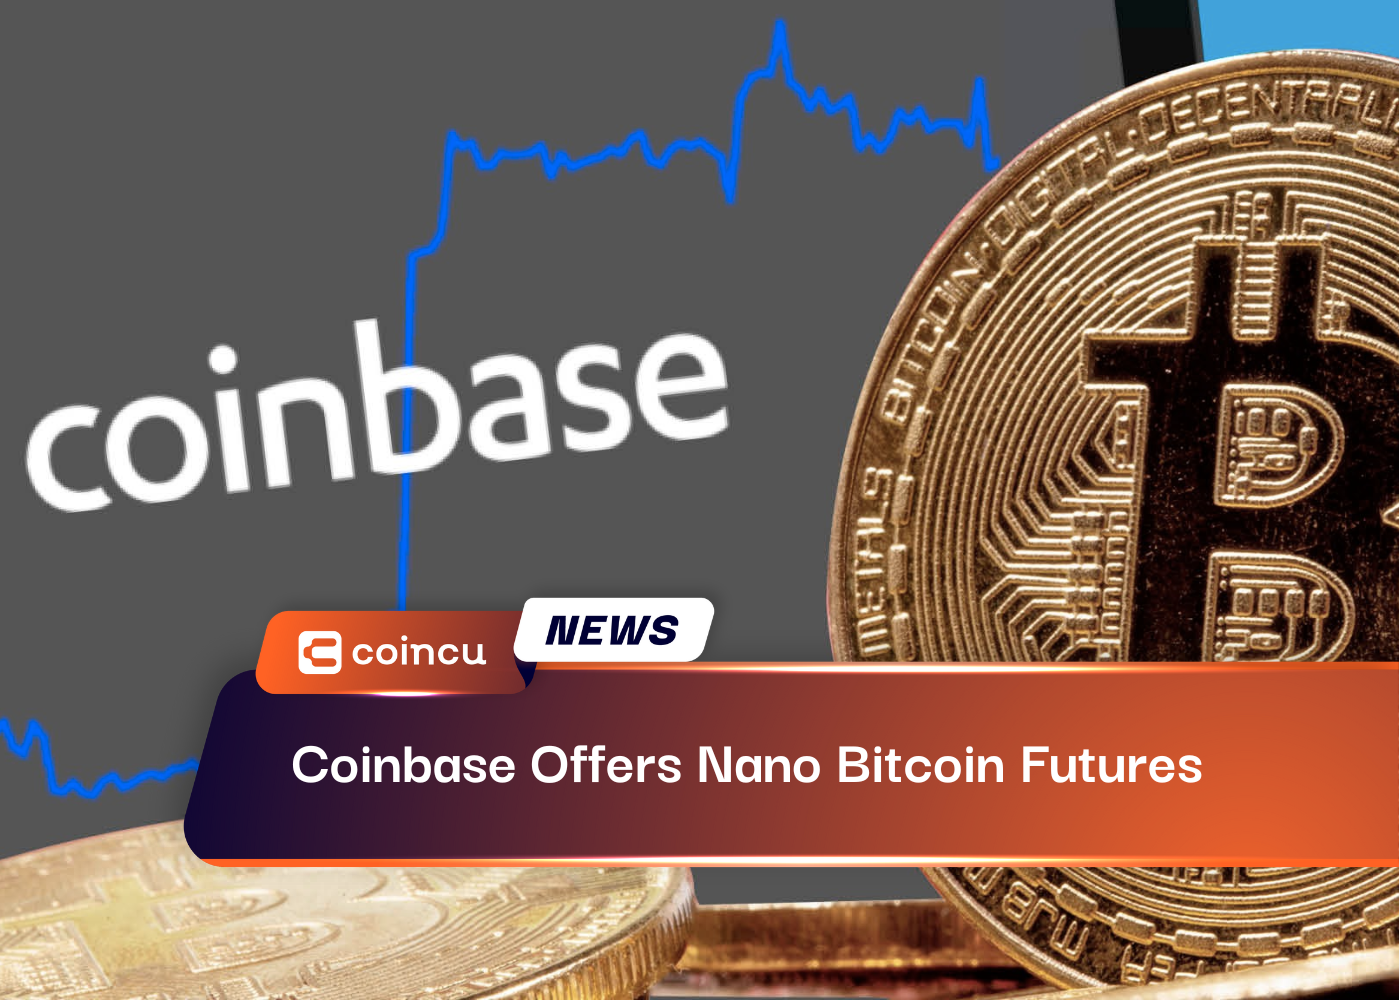 Coinbaseがナノビットコイン先物を提供